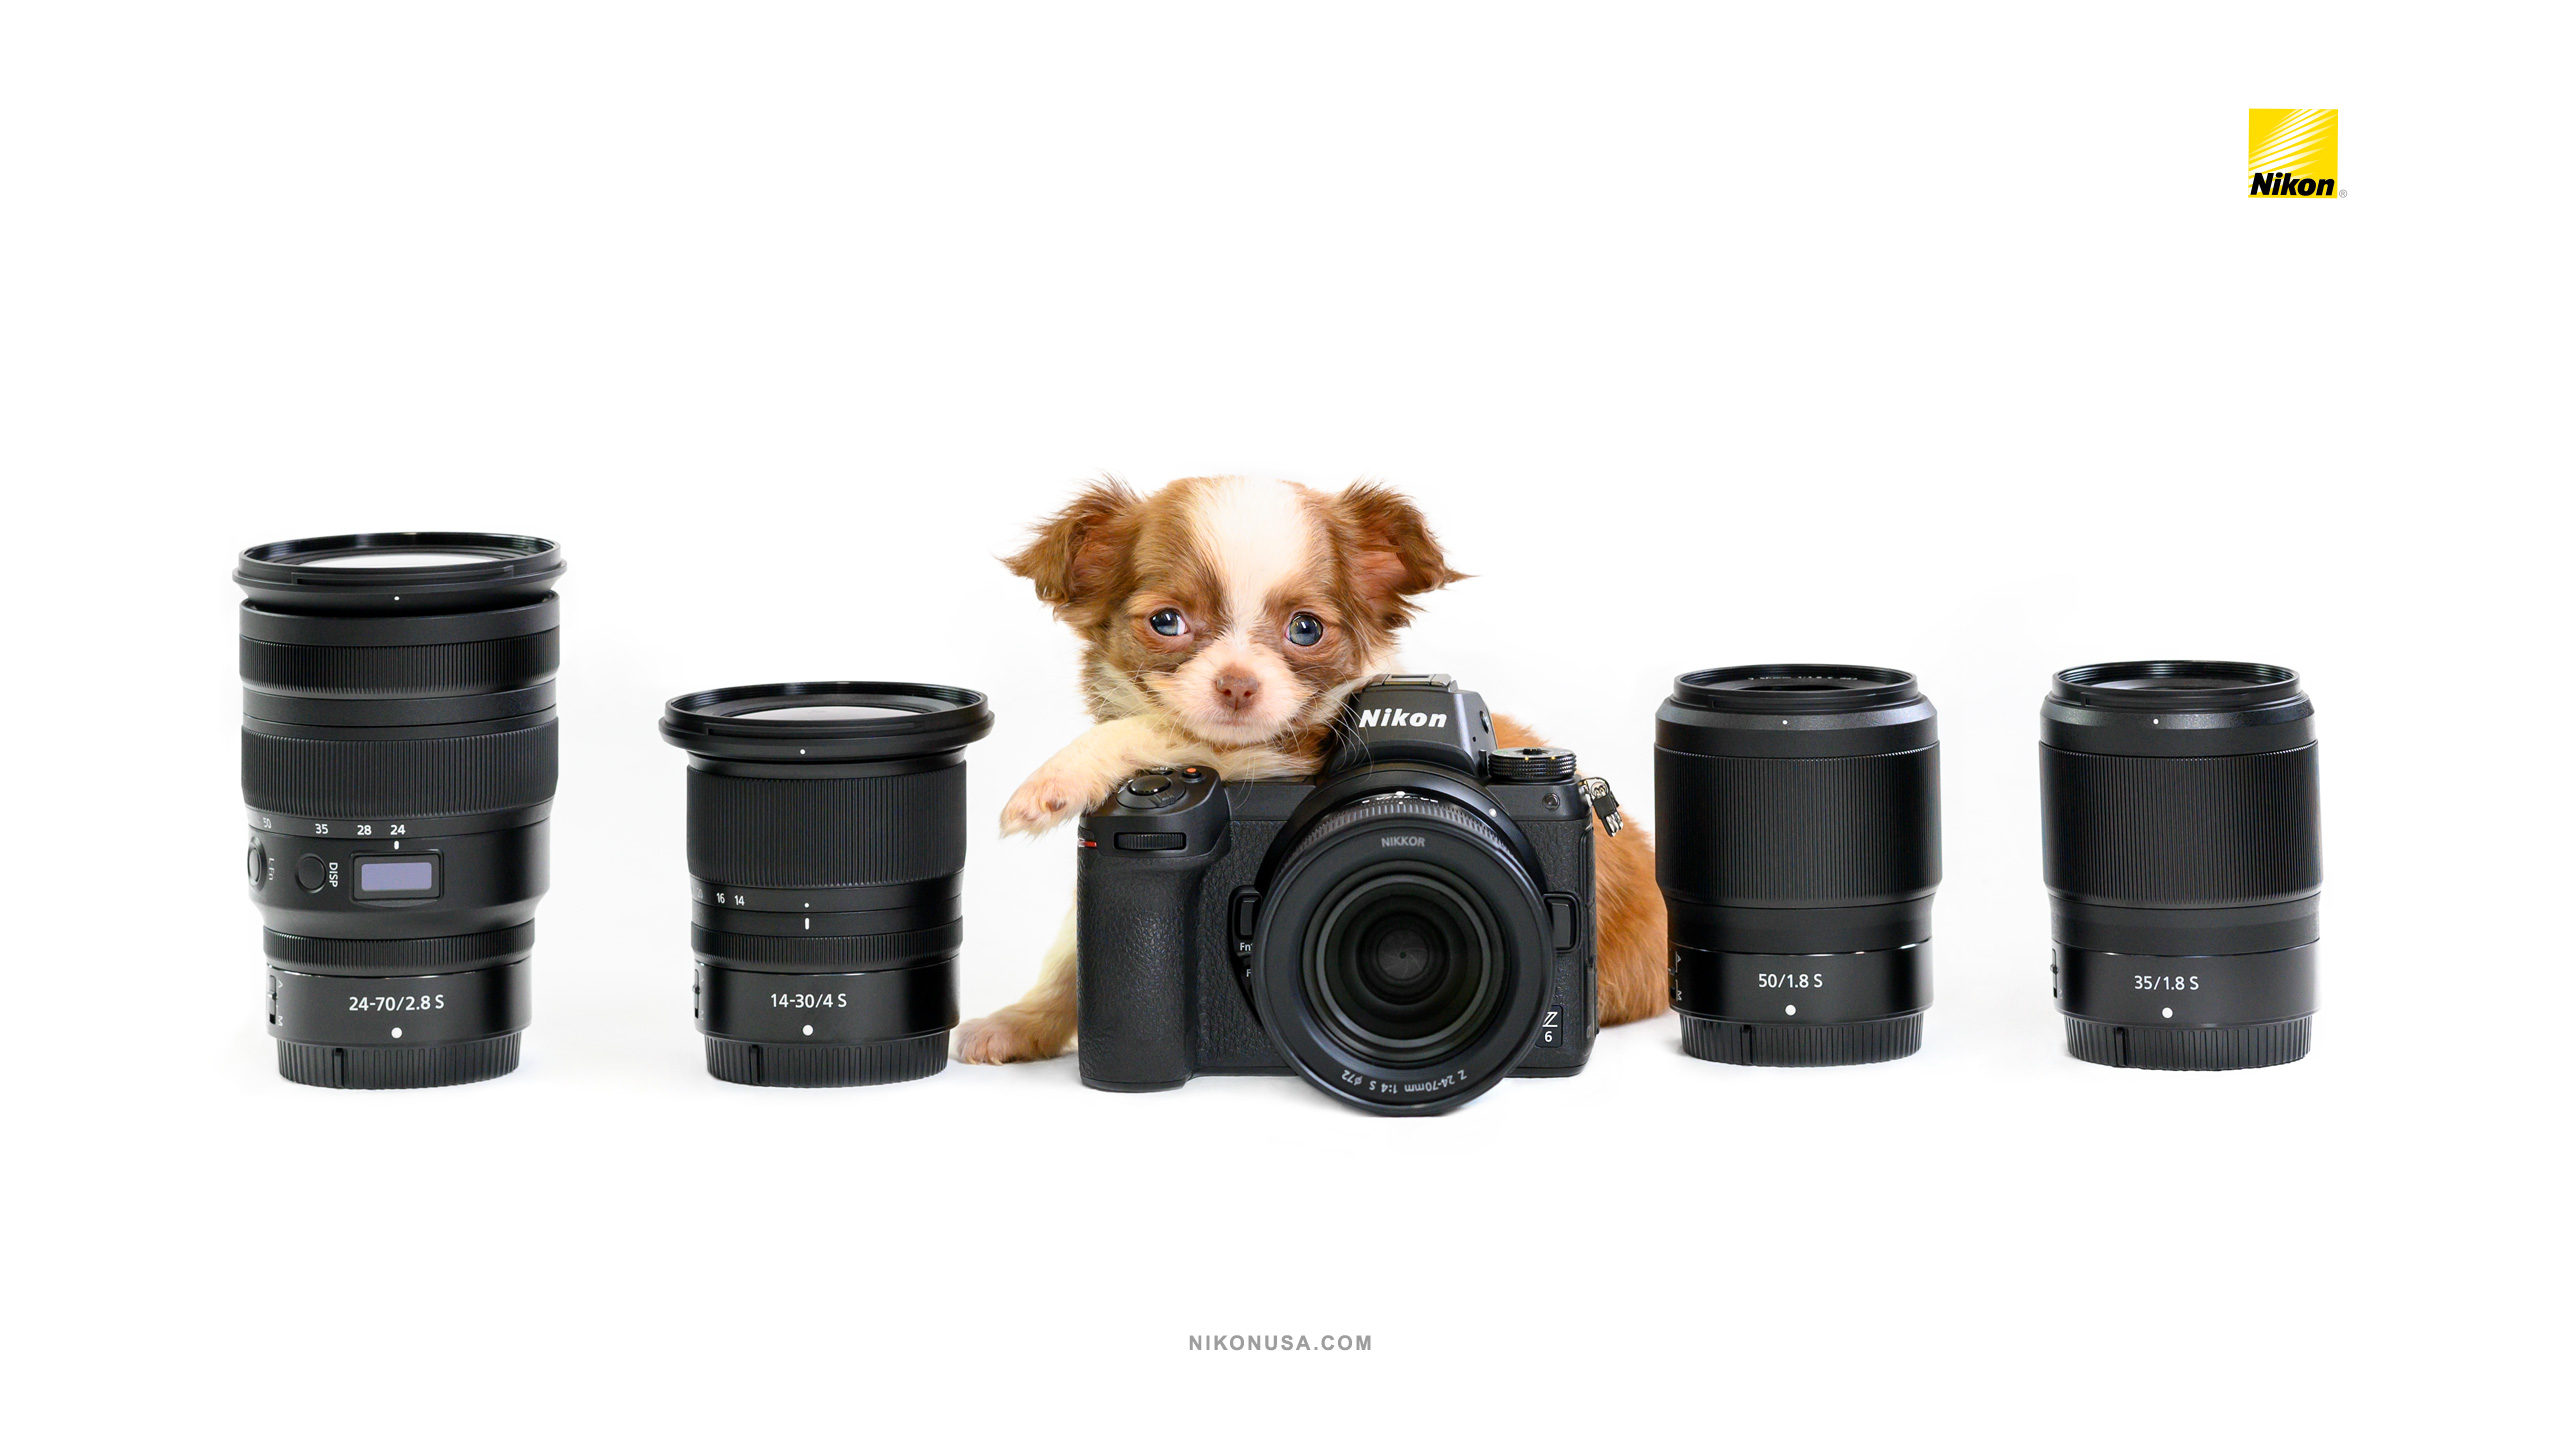 Tamara Lackey Puppies and Nikon Gear